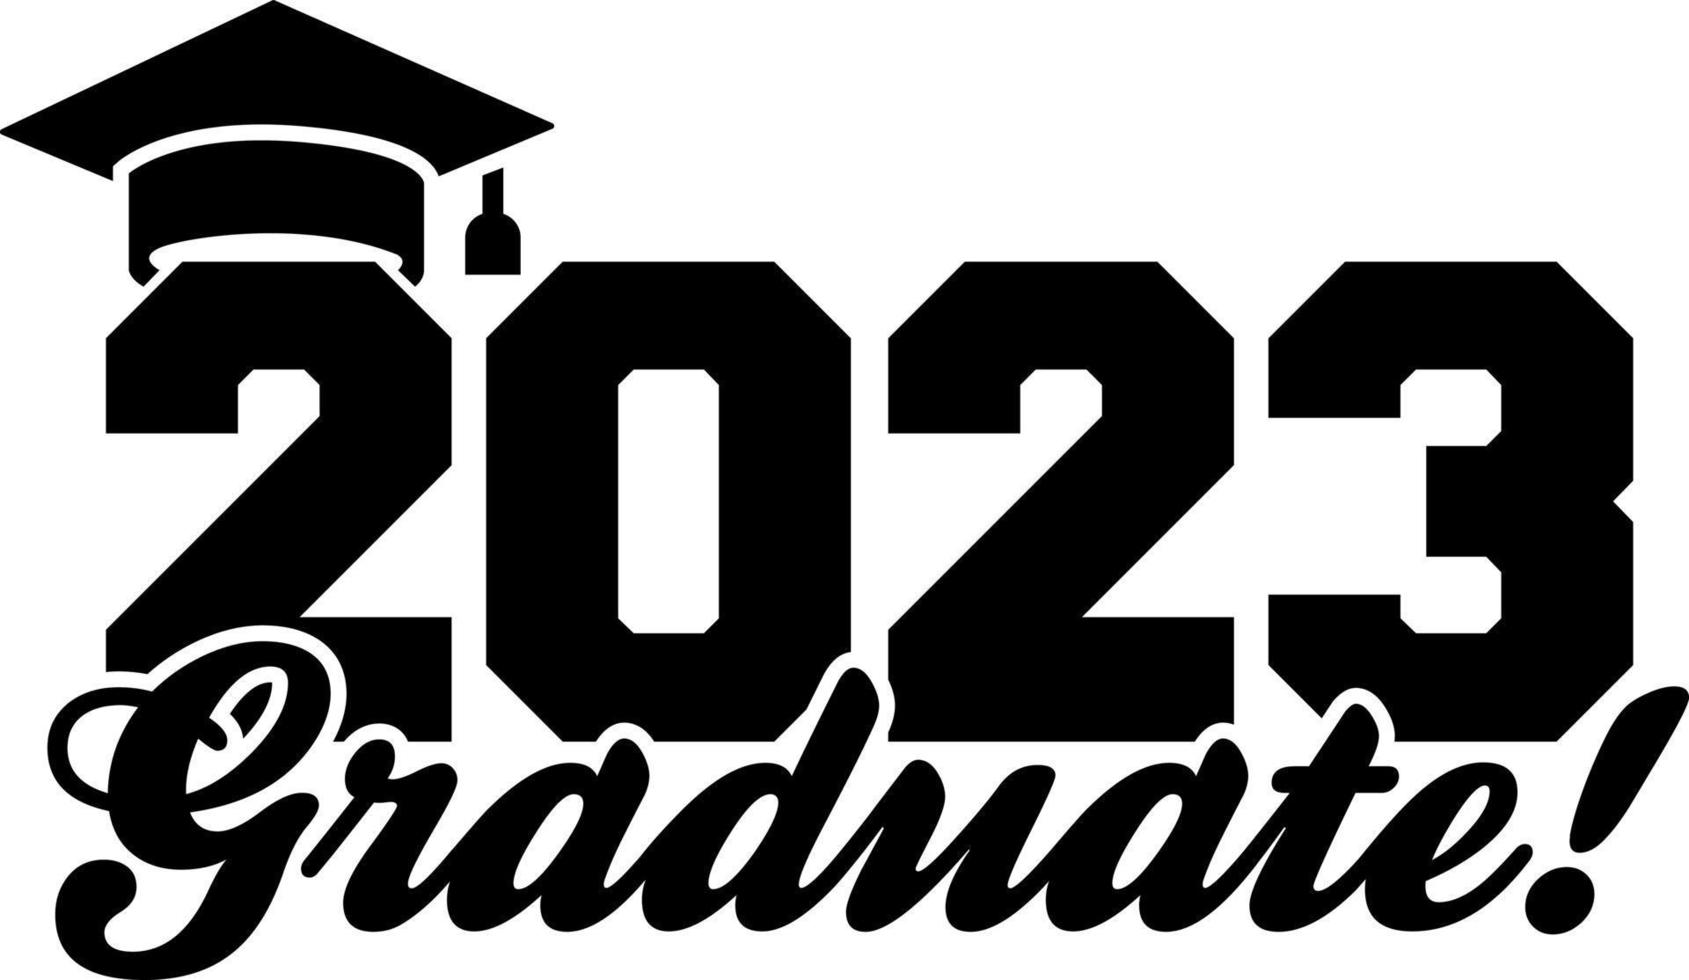 Modèle de conception de diplôme d'études supérieures 2023, autocollant de fenêtre de voiture, pod, couverture, fond noir isolé vecteur